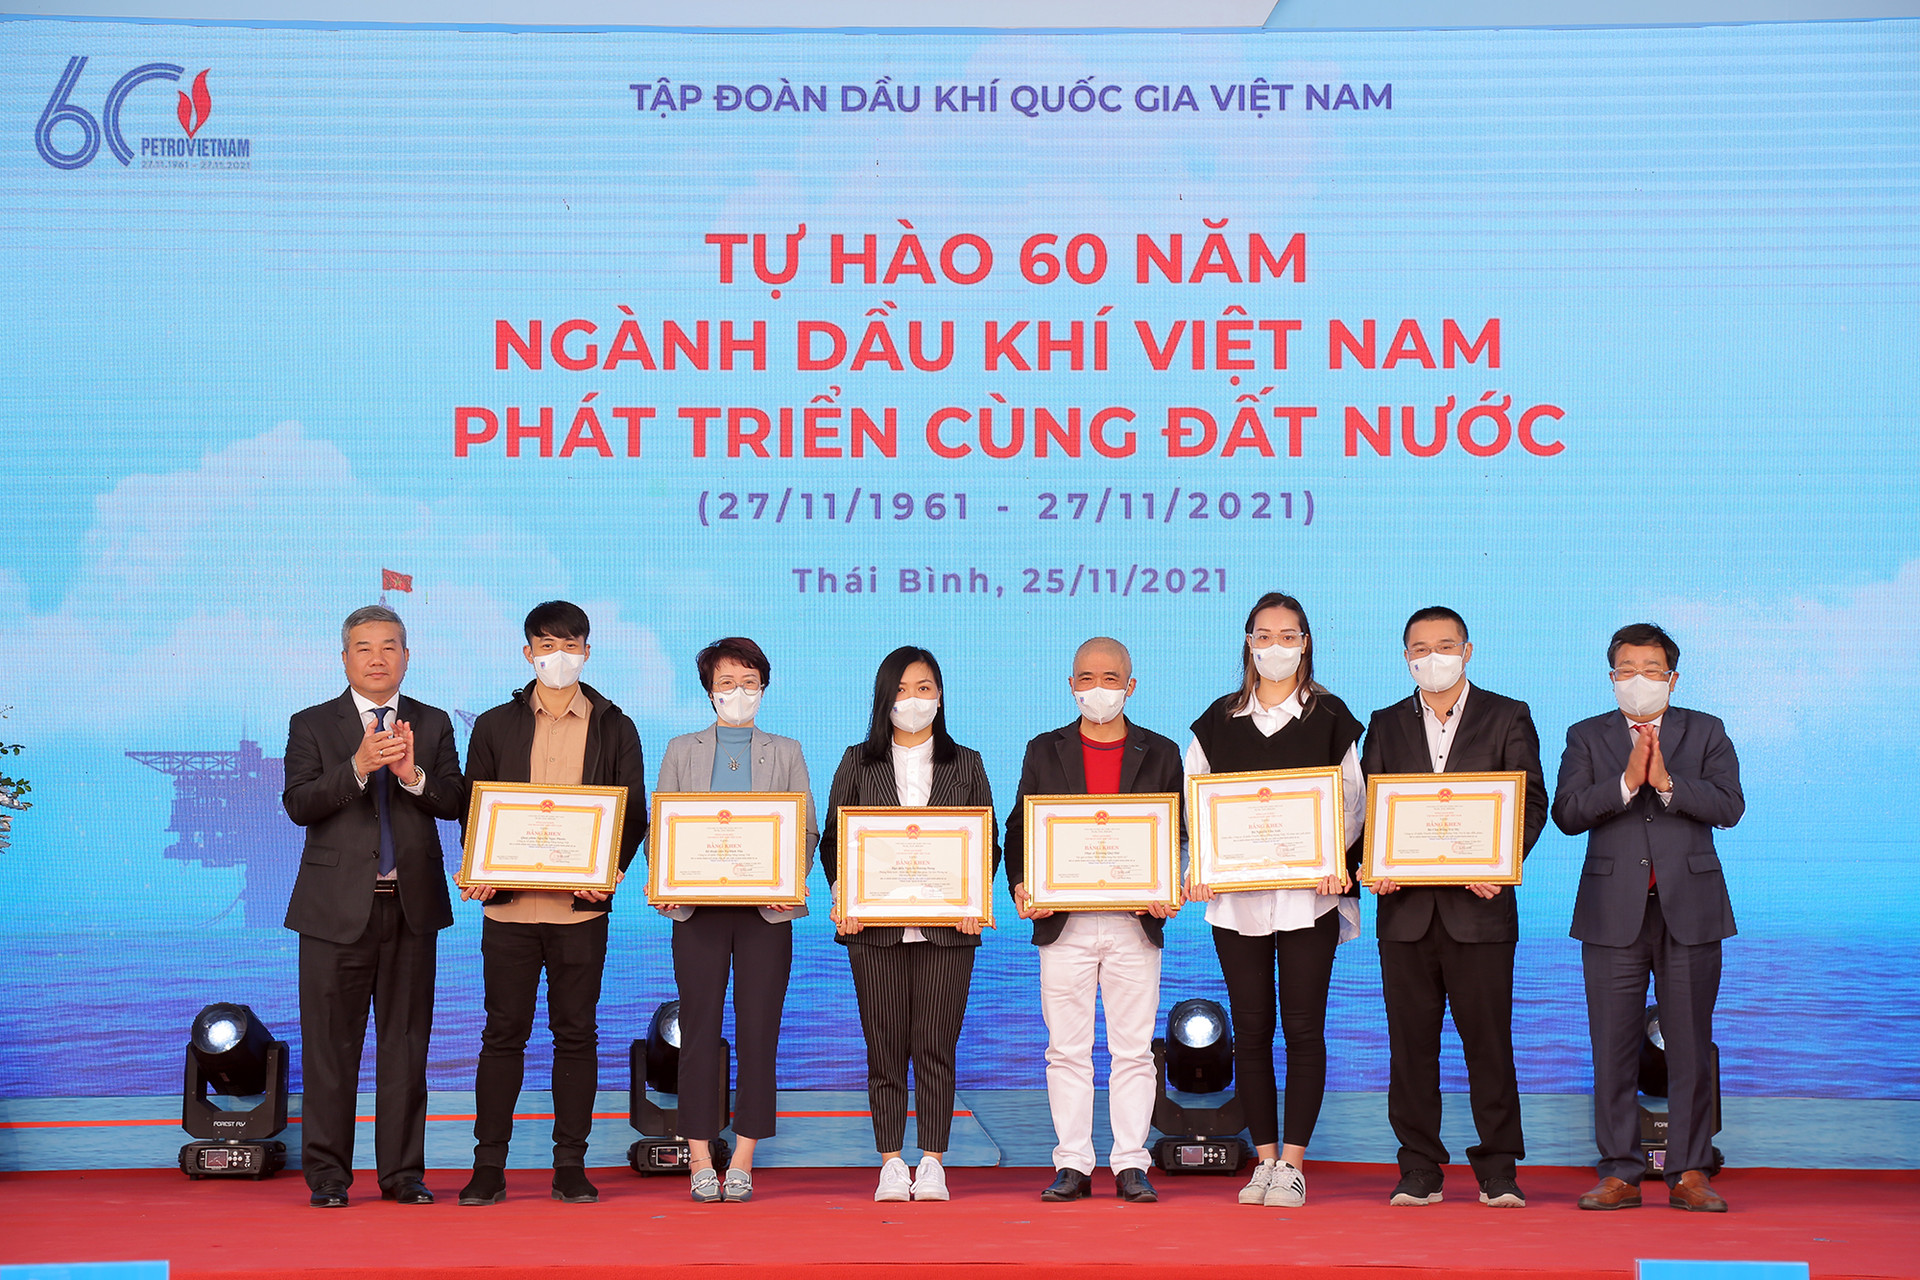 Tôn vinh những đóng góp của các cá nhân cho ngành Dầu khí Việt Nam